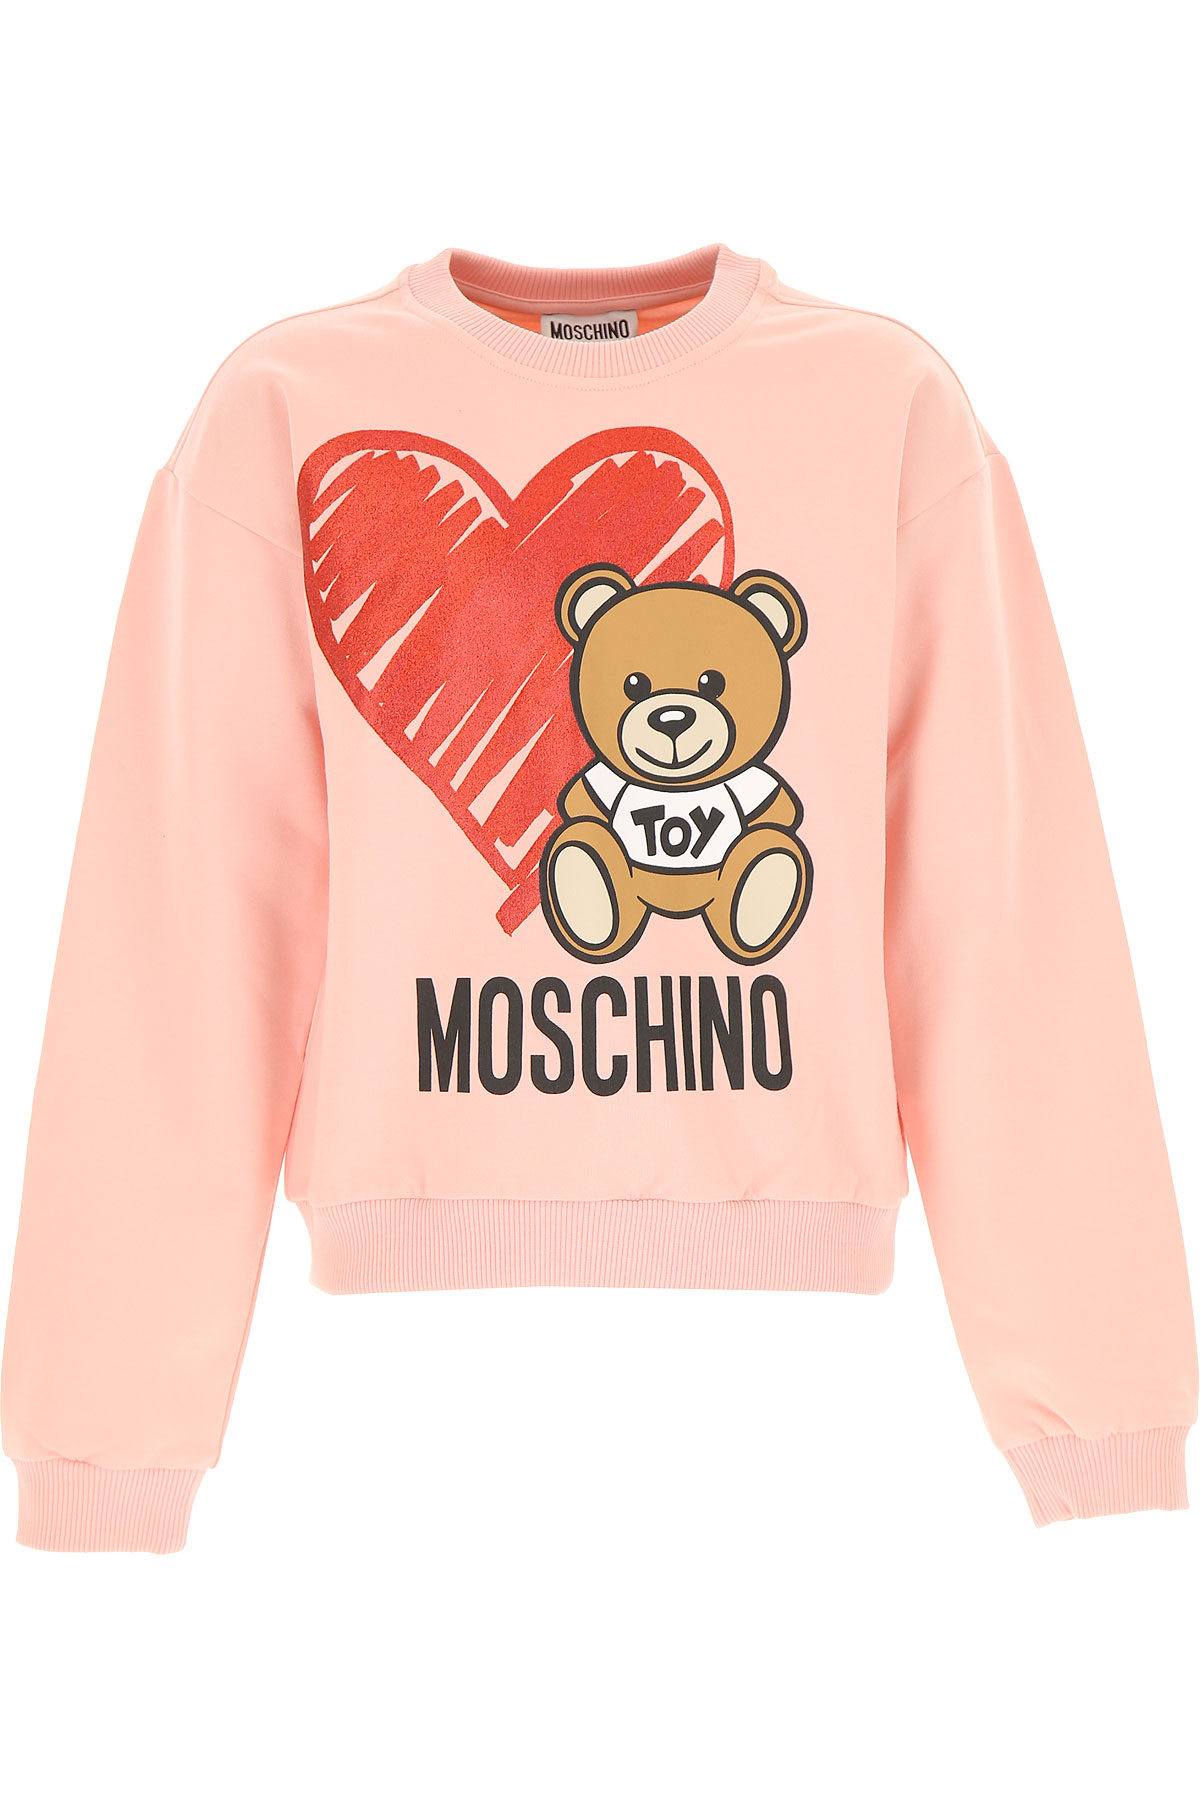 Moschino Kinder Sweatshirt & Kapuzenpullover für Mädchen Günstig im Sale, Pink, Baumwolle, 2017, 10Y 12Y 4Y 5Y